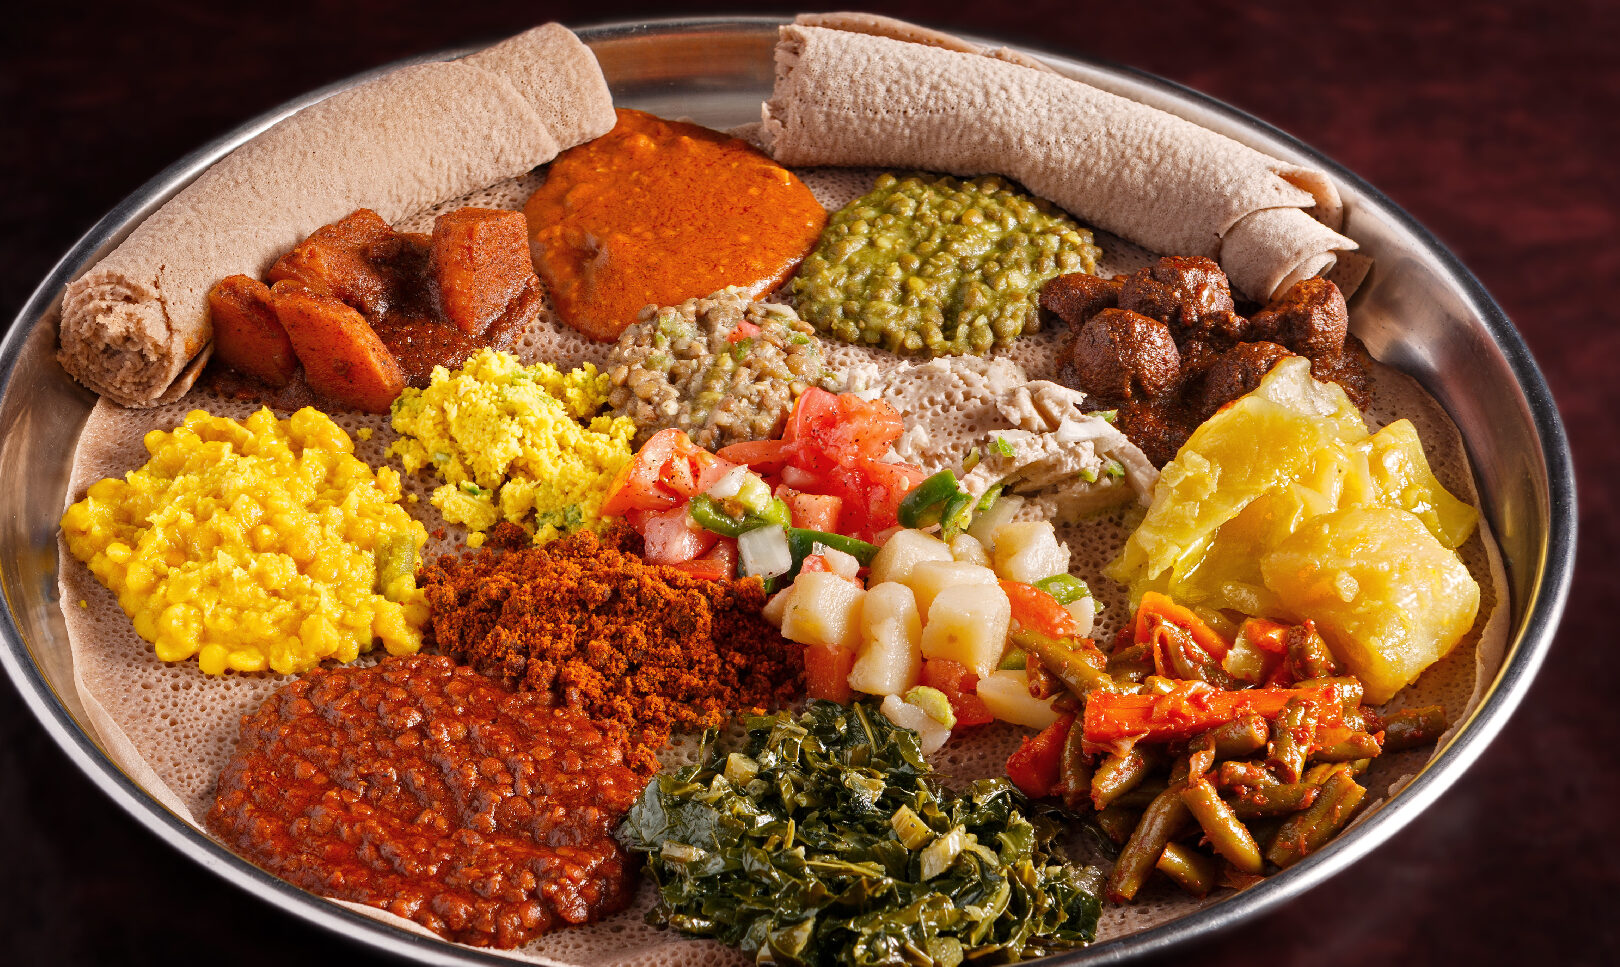 Descubre la deliciosa gastronomía de Etiopía: Platos típicos que debes probar.